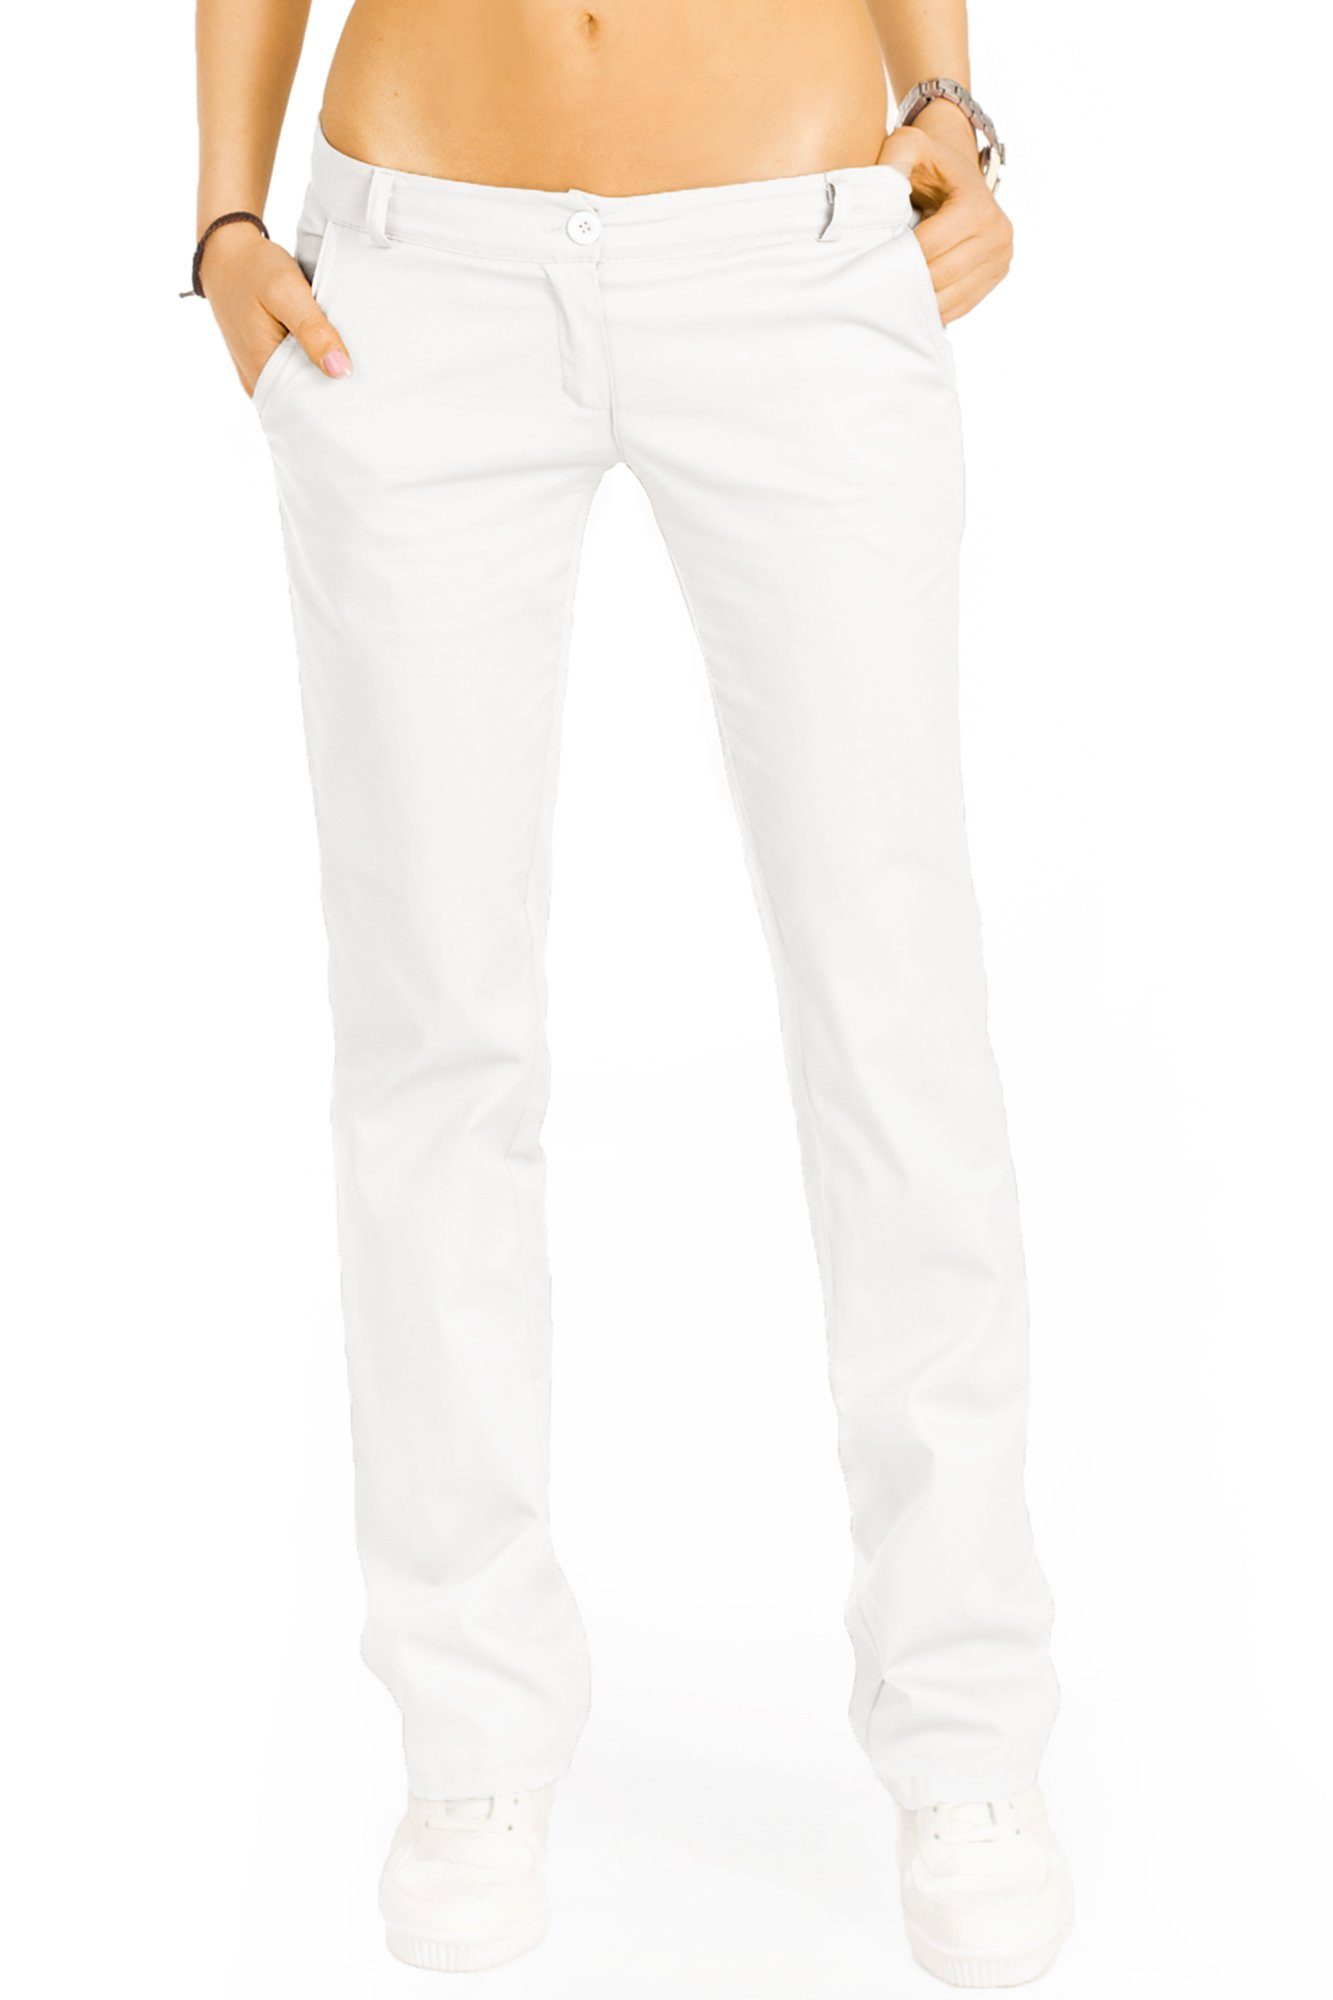 be styled Bootcuthose low waist Damenhosen, ausgestellte Hüfthose in vielen Farben j20k weiß